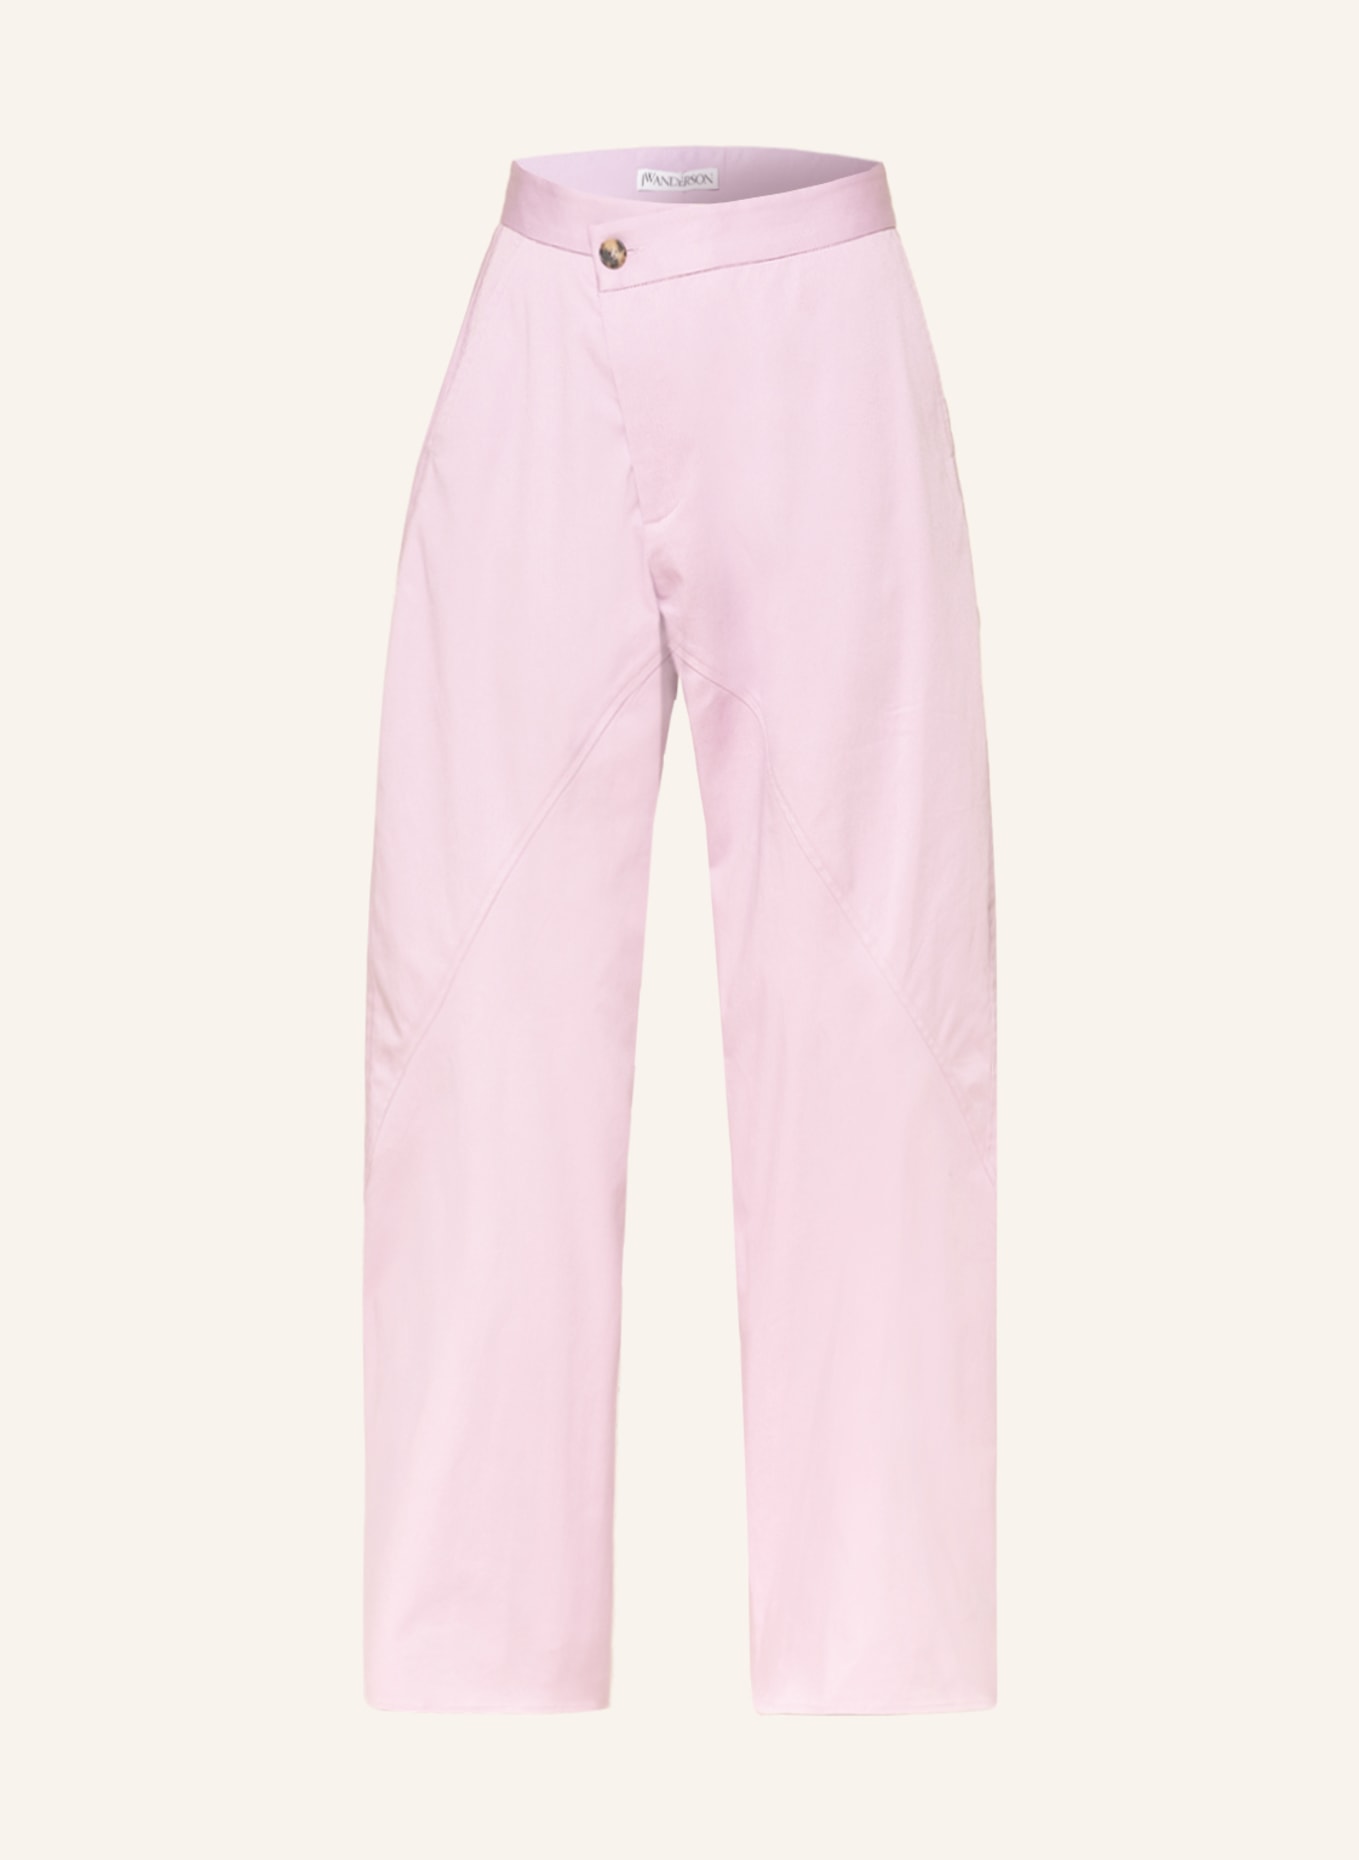 JW ANDERSON Pants, Color: LIGHT PURPLE (Image 1)